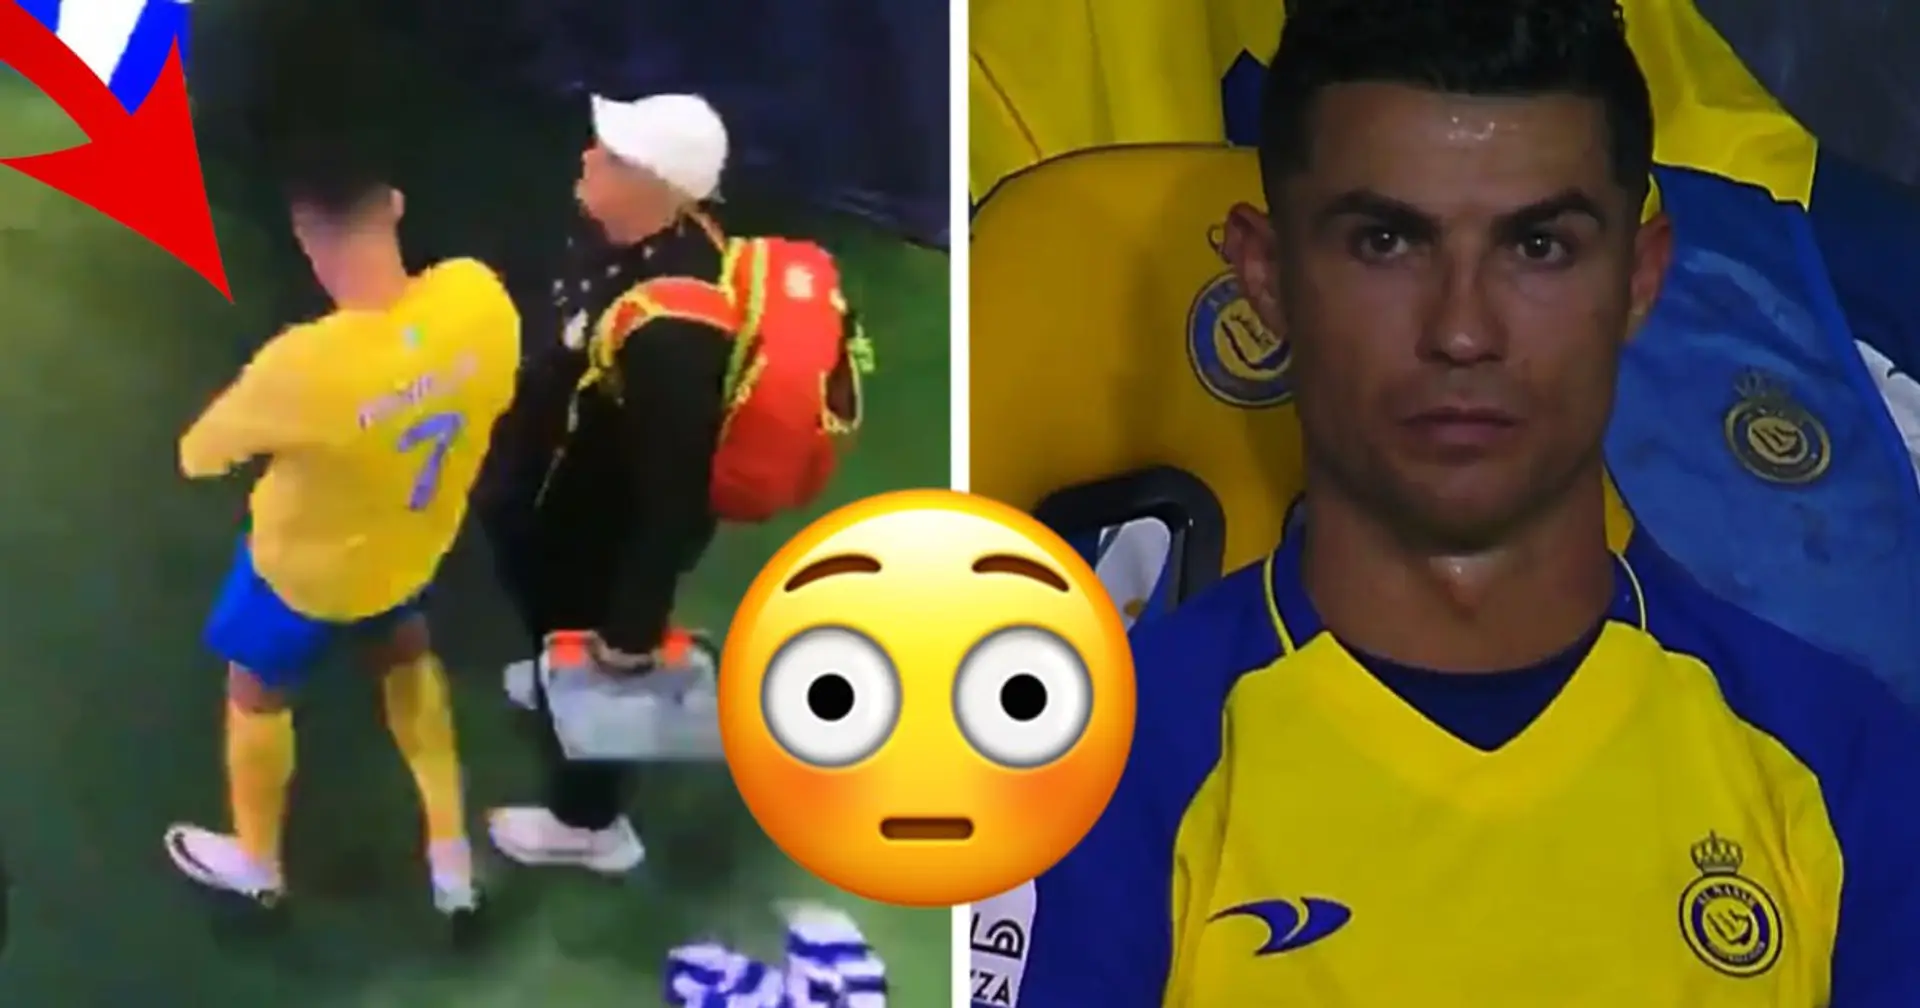 "Ekelhaft": Fans verärgert über Ronaldos Verhalten nach dem letzten Spiel